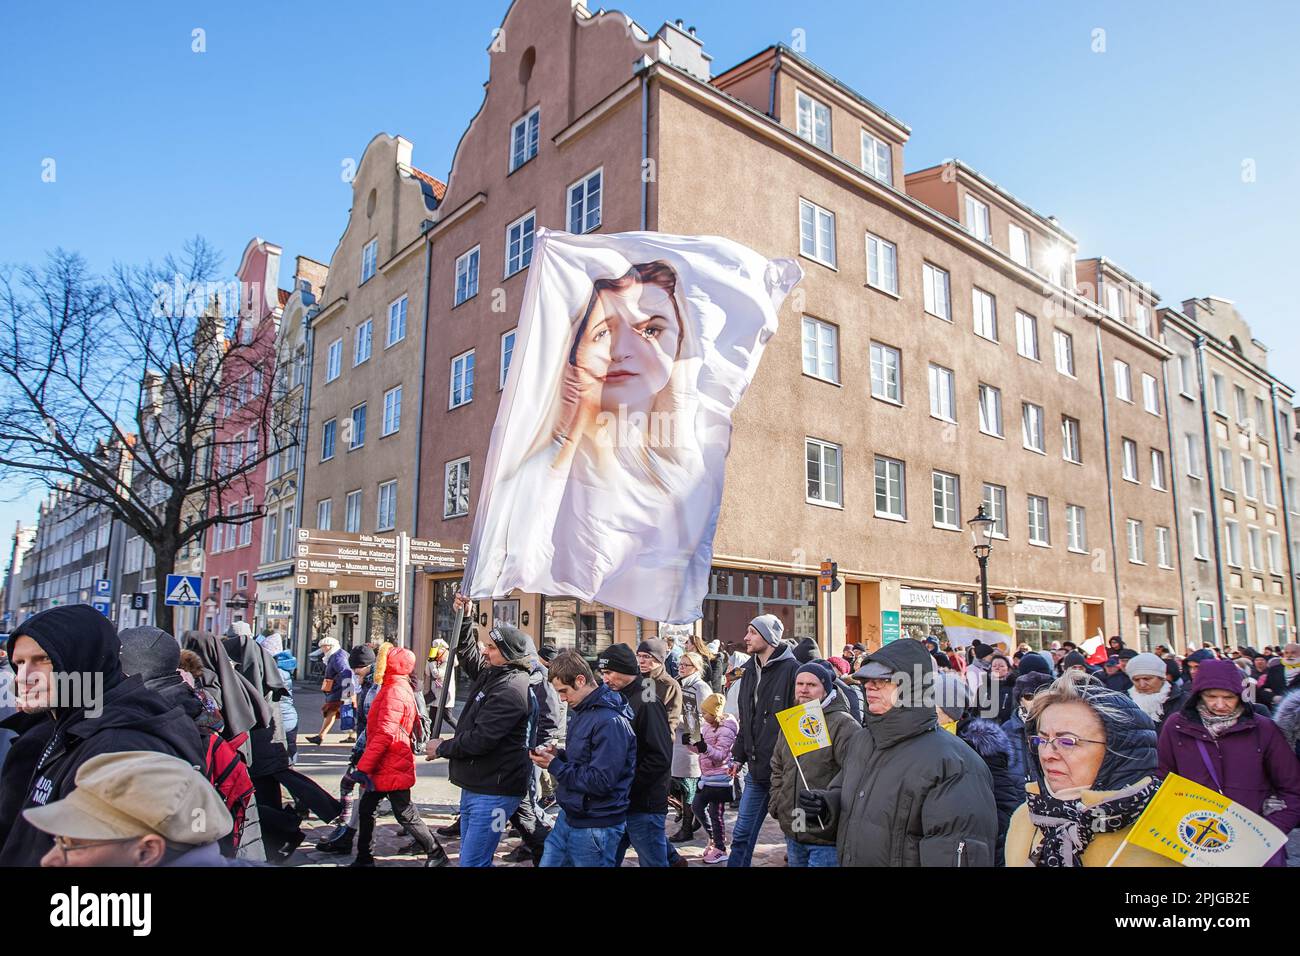 Gdansk, Pologne avril 2nd. 2023 plusieurs centaines de personnes avec des portraits de Jean-Paul II et des drapeaux du Vatican sont entrées dans ce qu'on appelle. Marche papale en défense du Pape Jean-Paul II le 2 avril 2023 à Gdansk, Pologne. Les participants à la marche sont principalement des retraités et des personnes âgées, inspirés par les prêtres catholiques et les politiciens de la coalition de droite au pouvoir. La marche a été organisée après un rapport de TVN de grande envergure révélant que le pape connaissait la pédophilie dans l'église catholique et a activement contribué à la cacher, y compris le transfert de prêtres soupçonnés de pédophilie à d'autres paroisses. CRE Banque D'Images